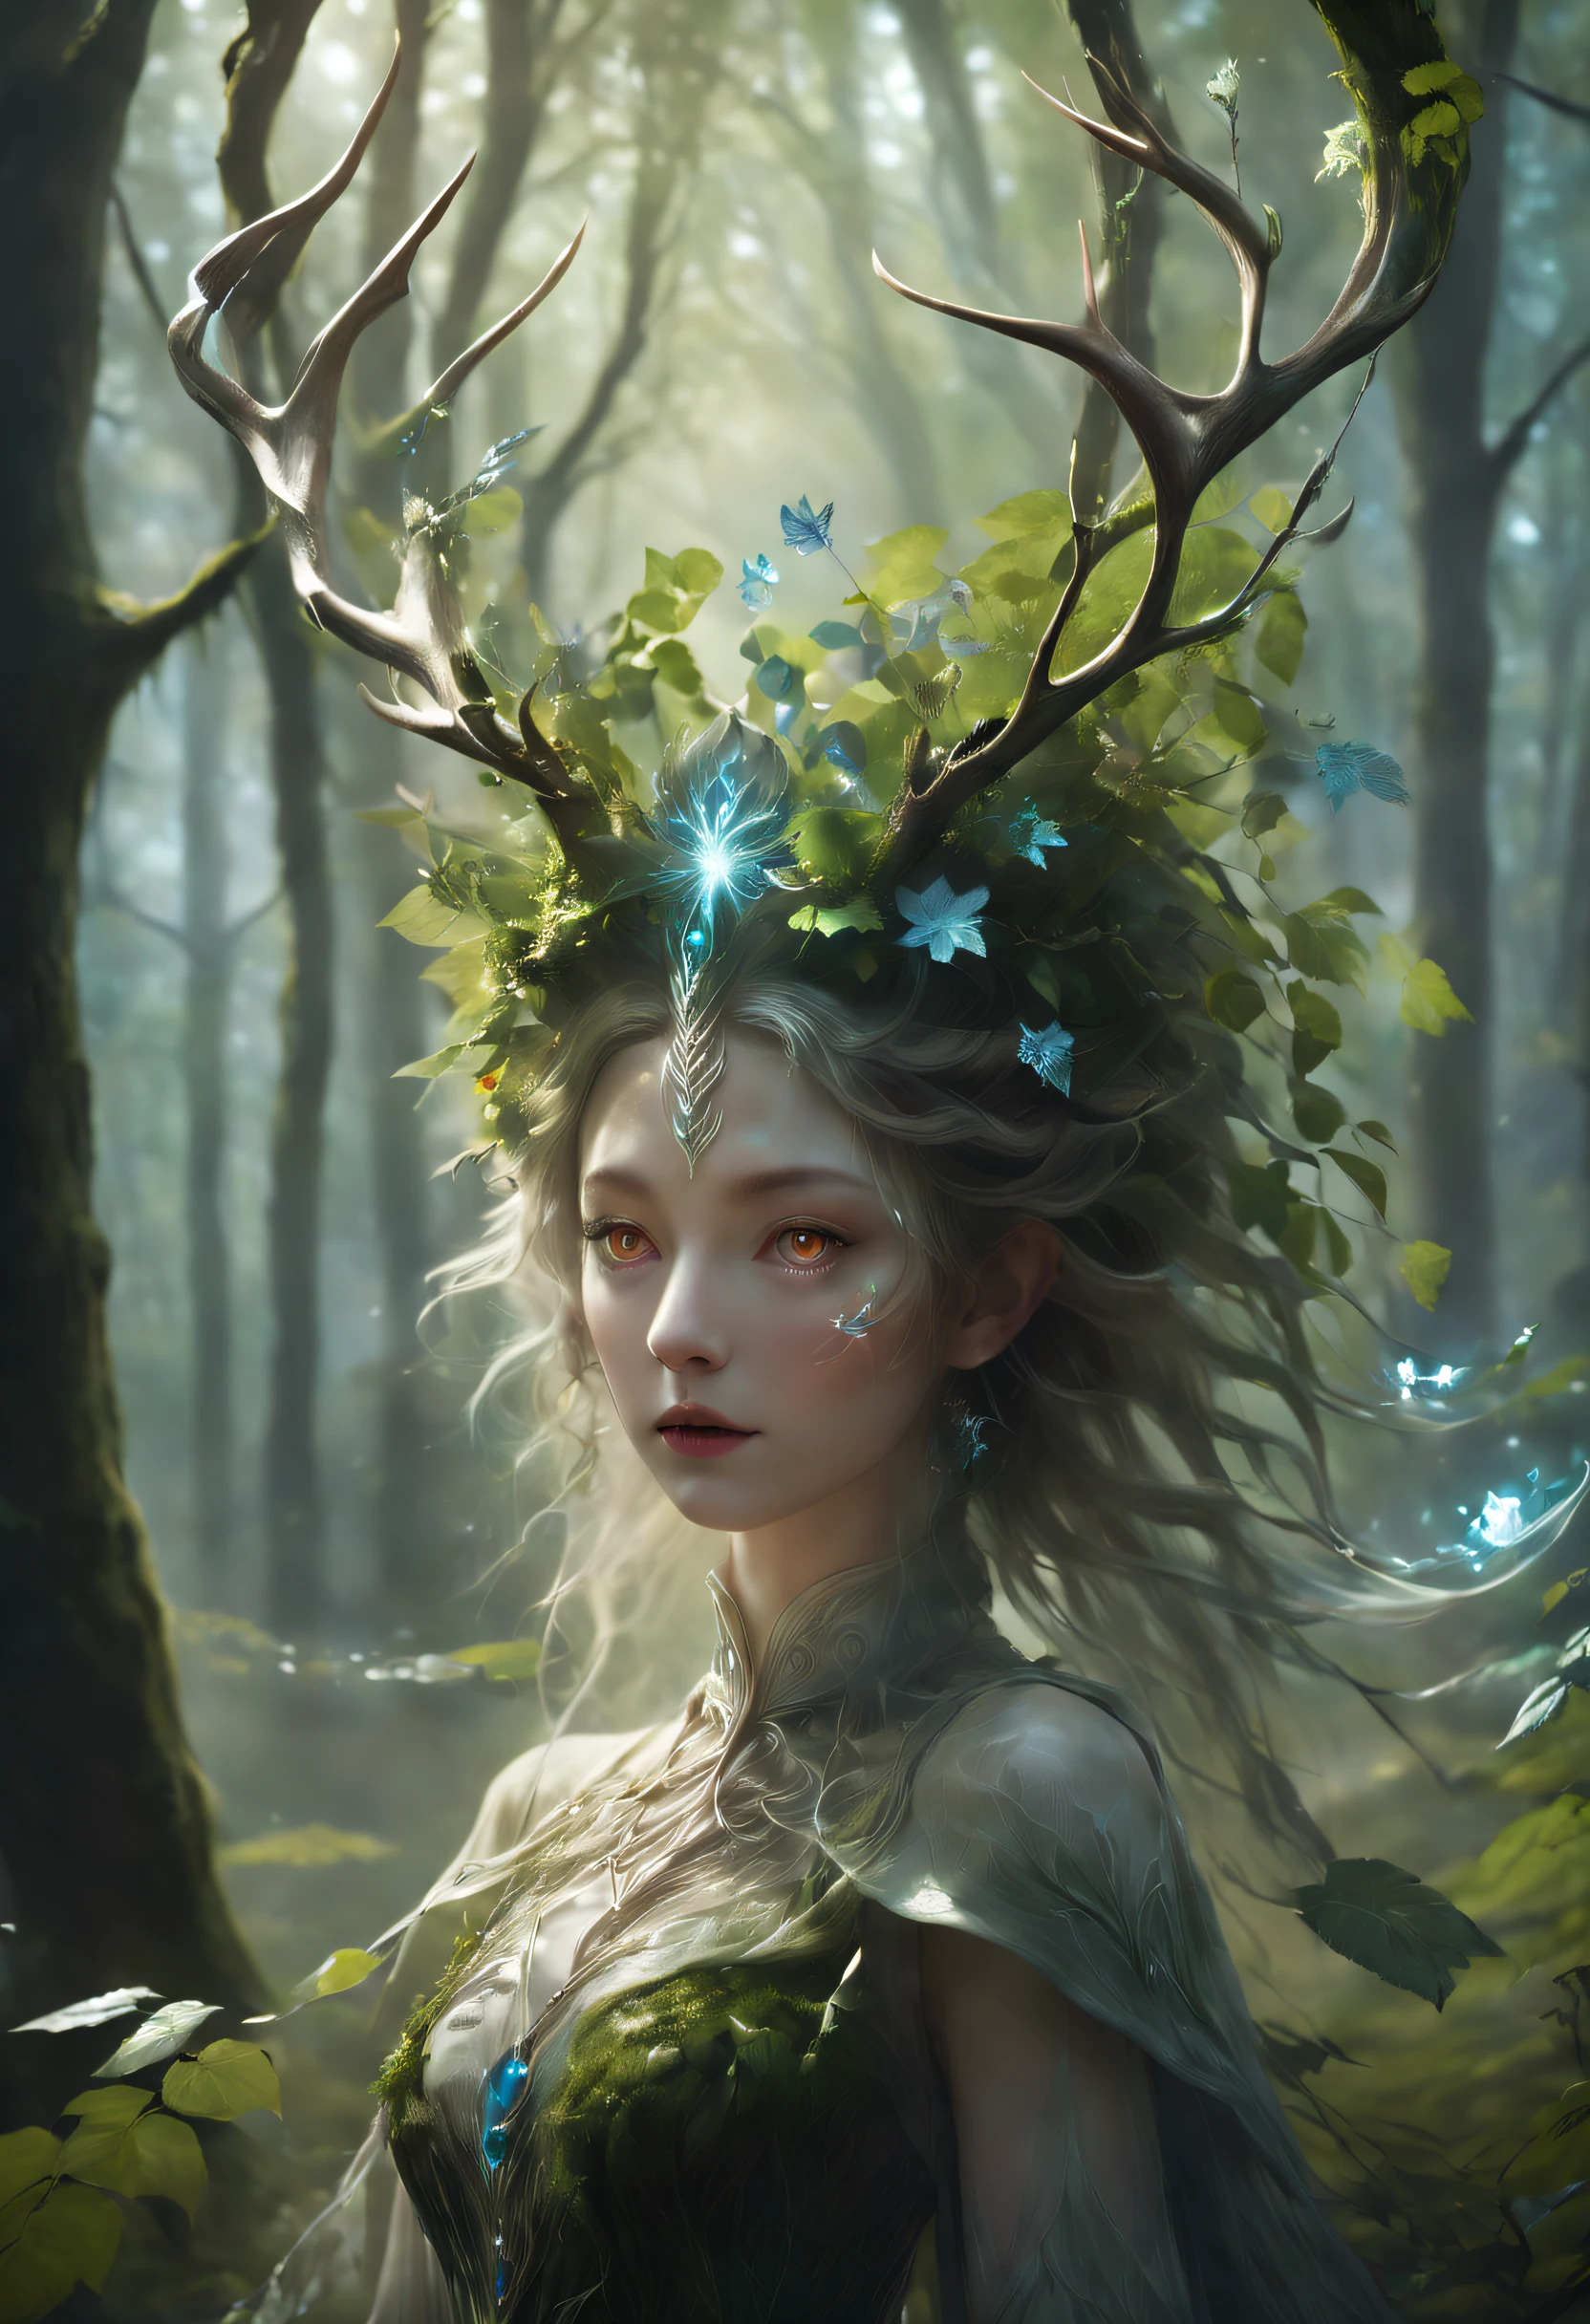 신비로운 숲에서, 소녀로서 놀라운 광경이 펼쳐진다, 겉으로 보기엔 숲속의 식물들로부터 만들어진 것 같아, 푸르른 나뭇잎 사이에 서서, 그녀의 형태는 섬세하게 장식되어 있습니다, 덩굴과 나뭇잎이 얽혀있다, 그리고 한 쌍의 천상의 뿔이 그녀의 머리를 장식하고 있습니다, 숲의 정령을 불러일으키는